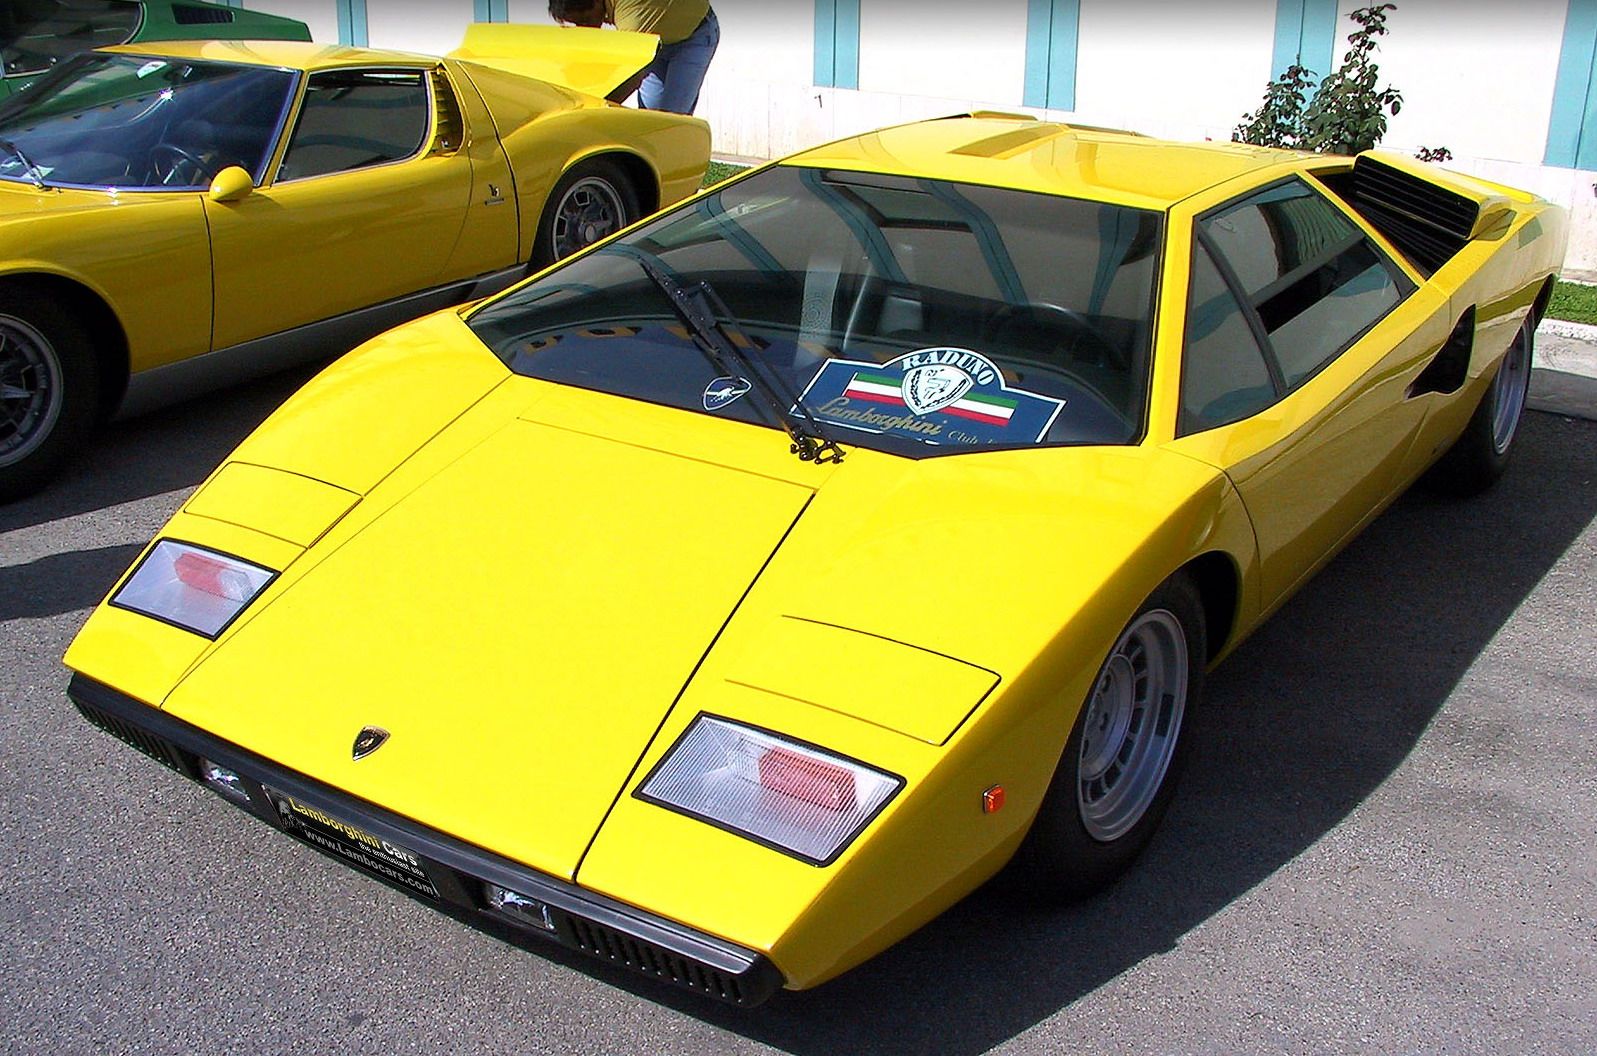 Lamborghini Countach 1974. Lamborghini Countach lp400. Countach lp400 Yellow. Lamborghini Countach LP 800 цвета. Амазинг елоу